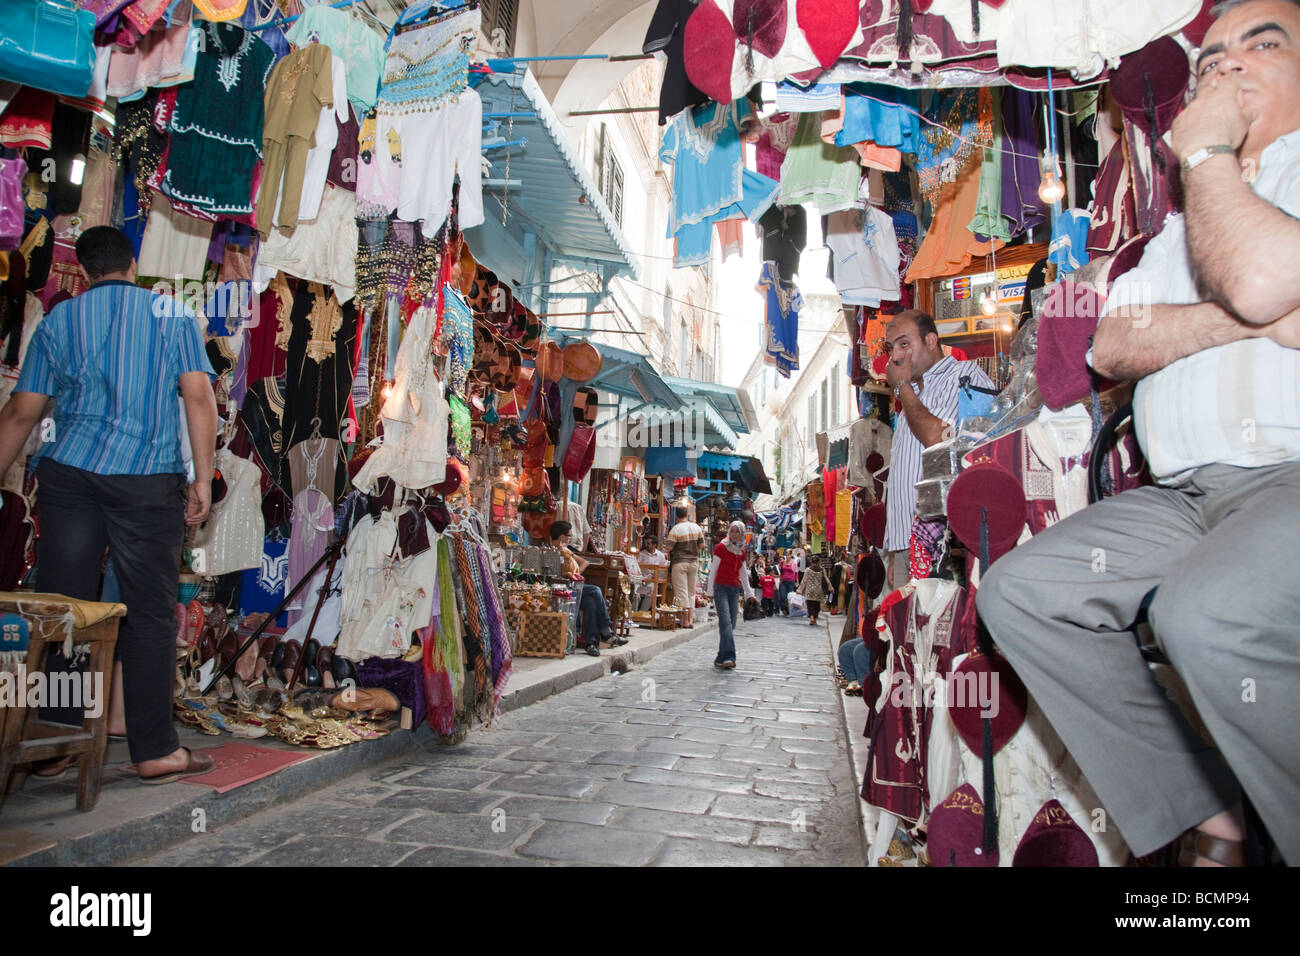 Classé patrimoine mondial de l'UNESCO, la Médina de Tunis abrite des boutiques proposant toutes sortes de souvenirs et d'artisanat. Banque D'Images